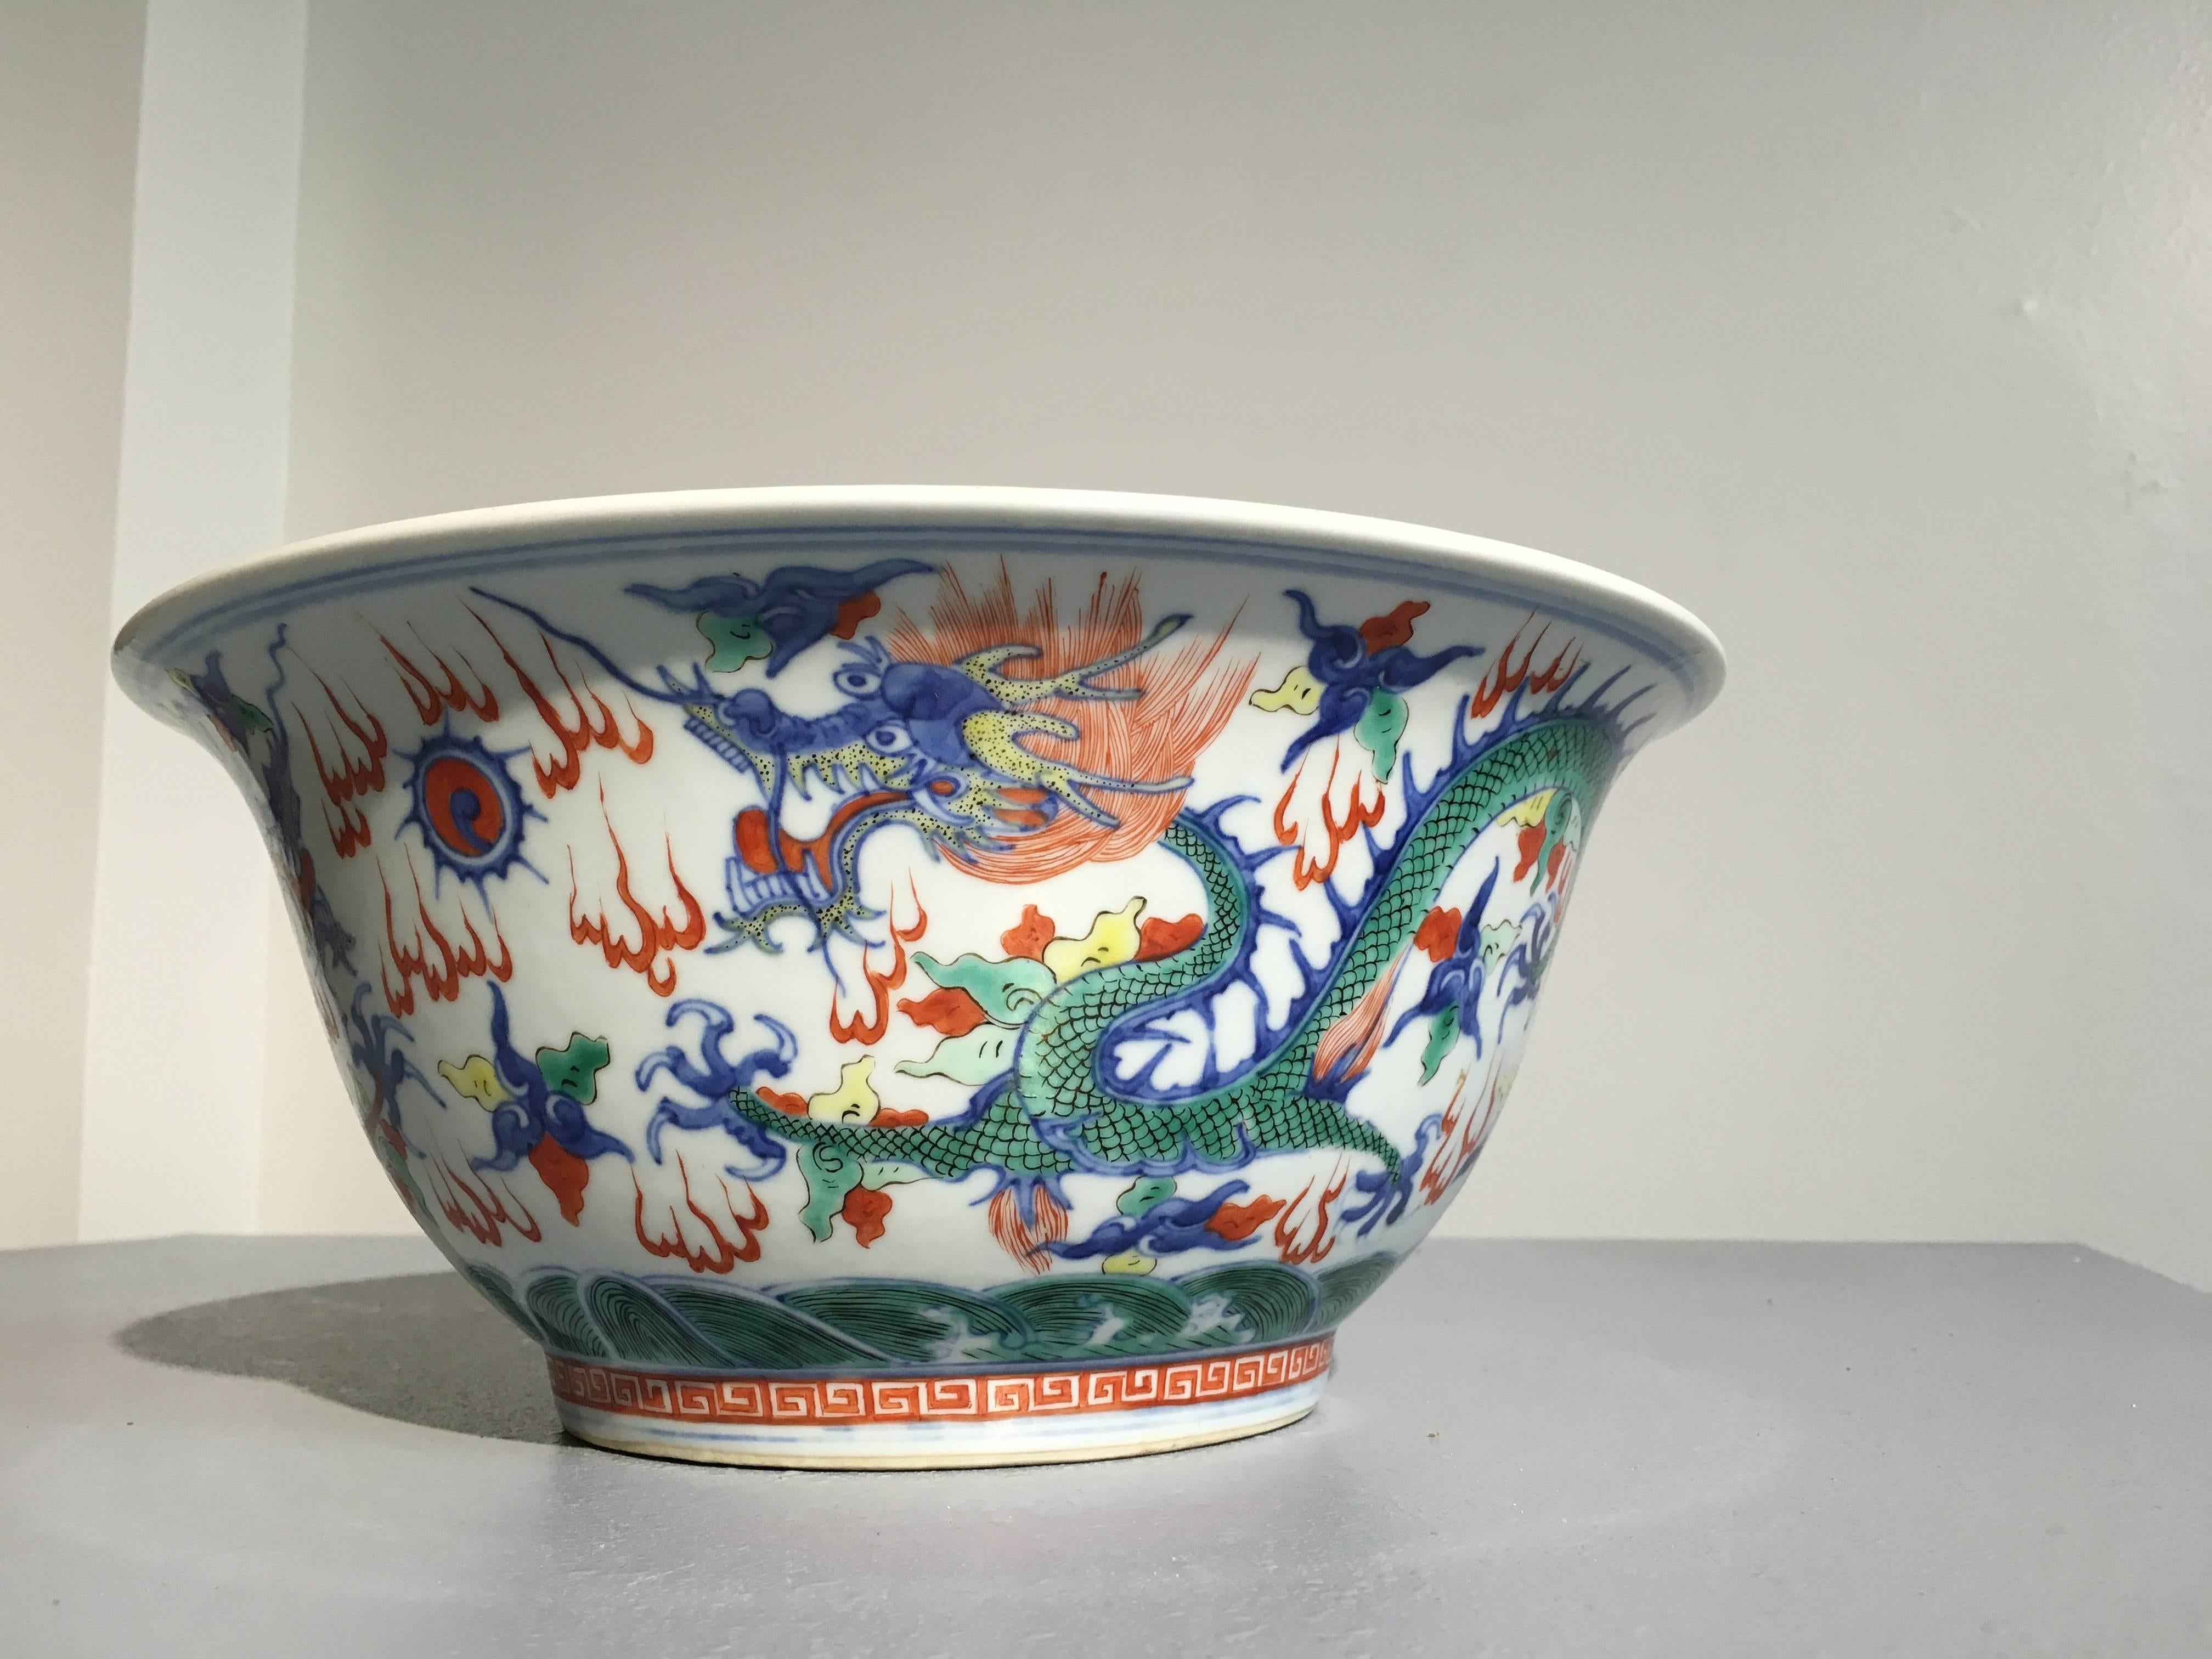 Eine große Wucai-Schale aus chinesischem Porzellan aus der Qing-Dynastie, die mit Unterglasurblau und Aufglasurrot, -grün und -gelb auf reinweißem Grund bemalt ist und sowohl außen als auch innen ein Drachenmuster aufweist. Eine apokryphe Marke 